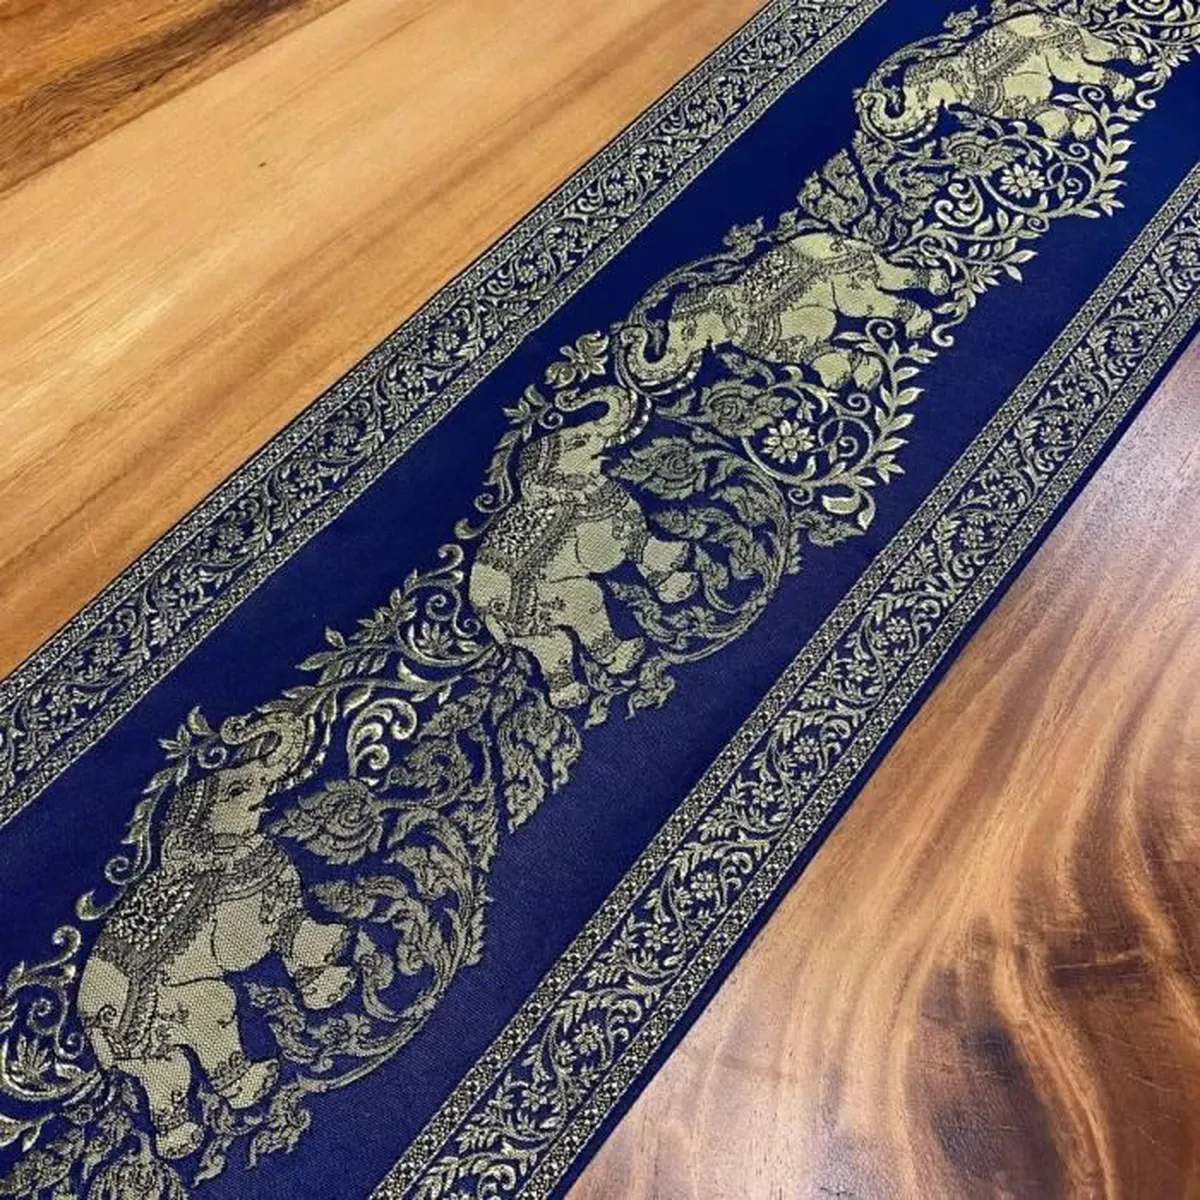 Chemin de Table en Tissu Couleur Bleu avec Pompons Dorés - Nappe Décoration / Dessus de Lit. Motif Éléphants. 23x200cm.